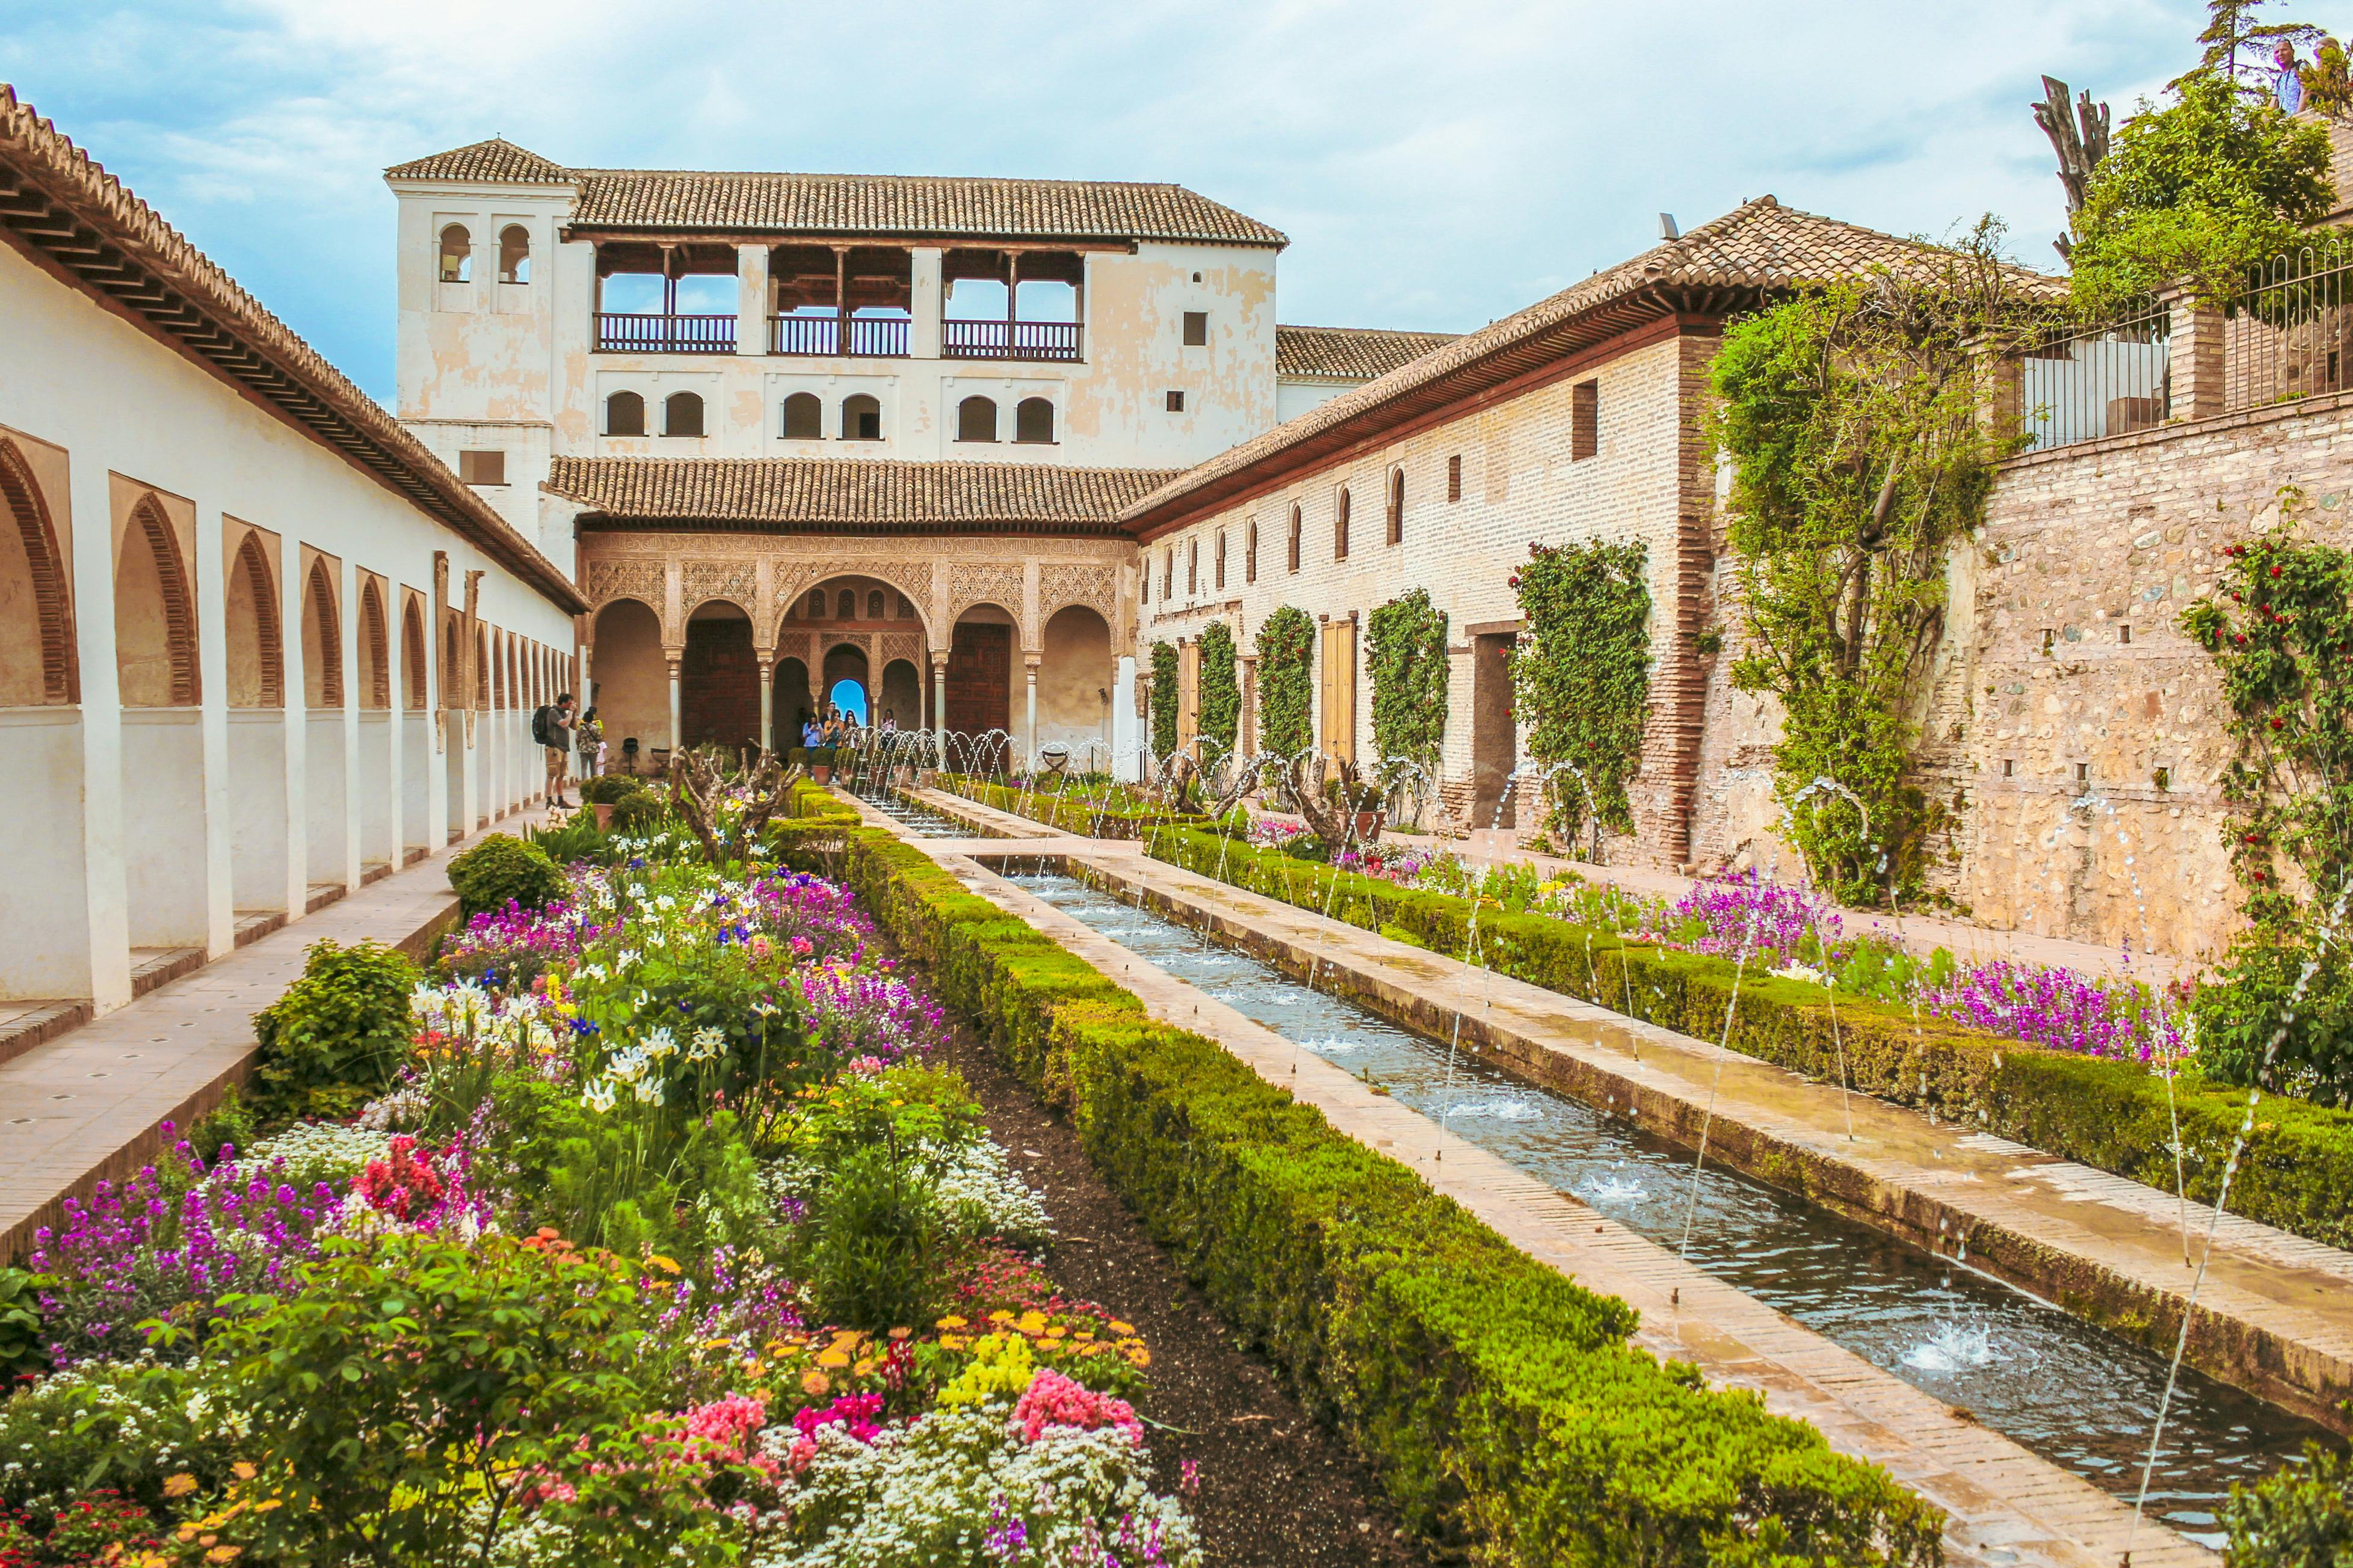 Führung durch die Alhambra mit Palast Carlos V., Generalife und Alcazaba